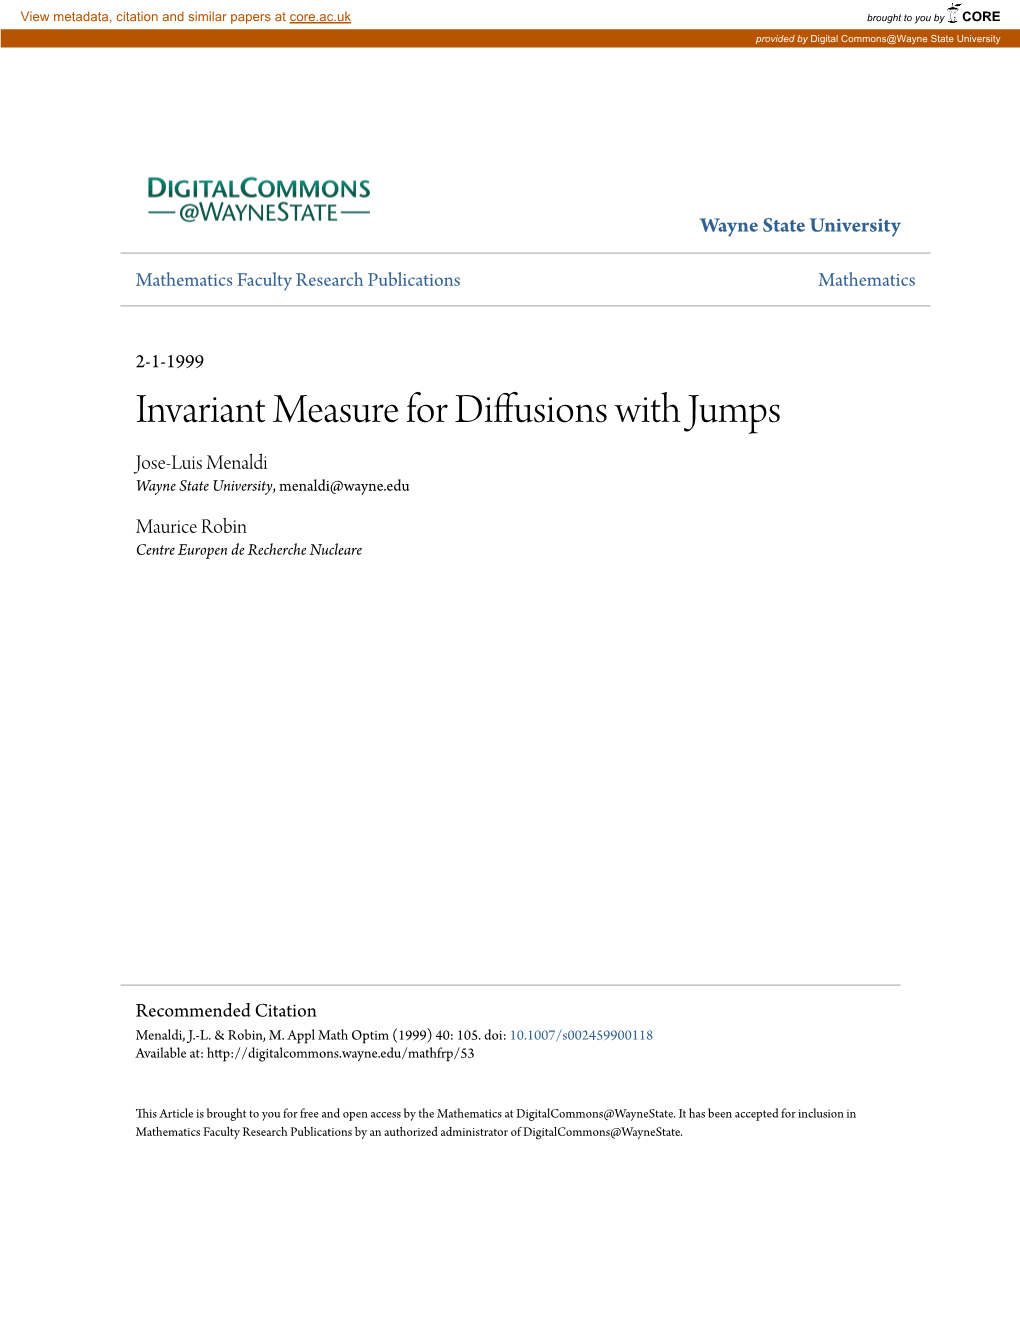 Invariant Measure for Diffusions with Jumps Jose-Luis Menaldi Wayne State University, Menaldi@Wayne.Edu